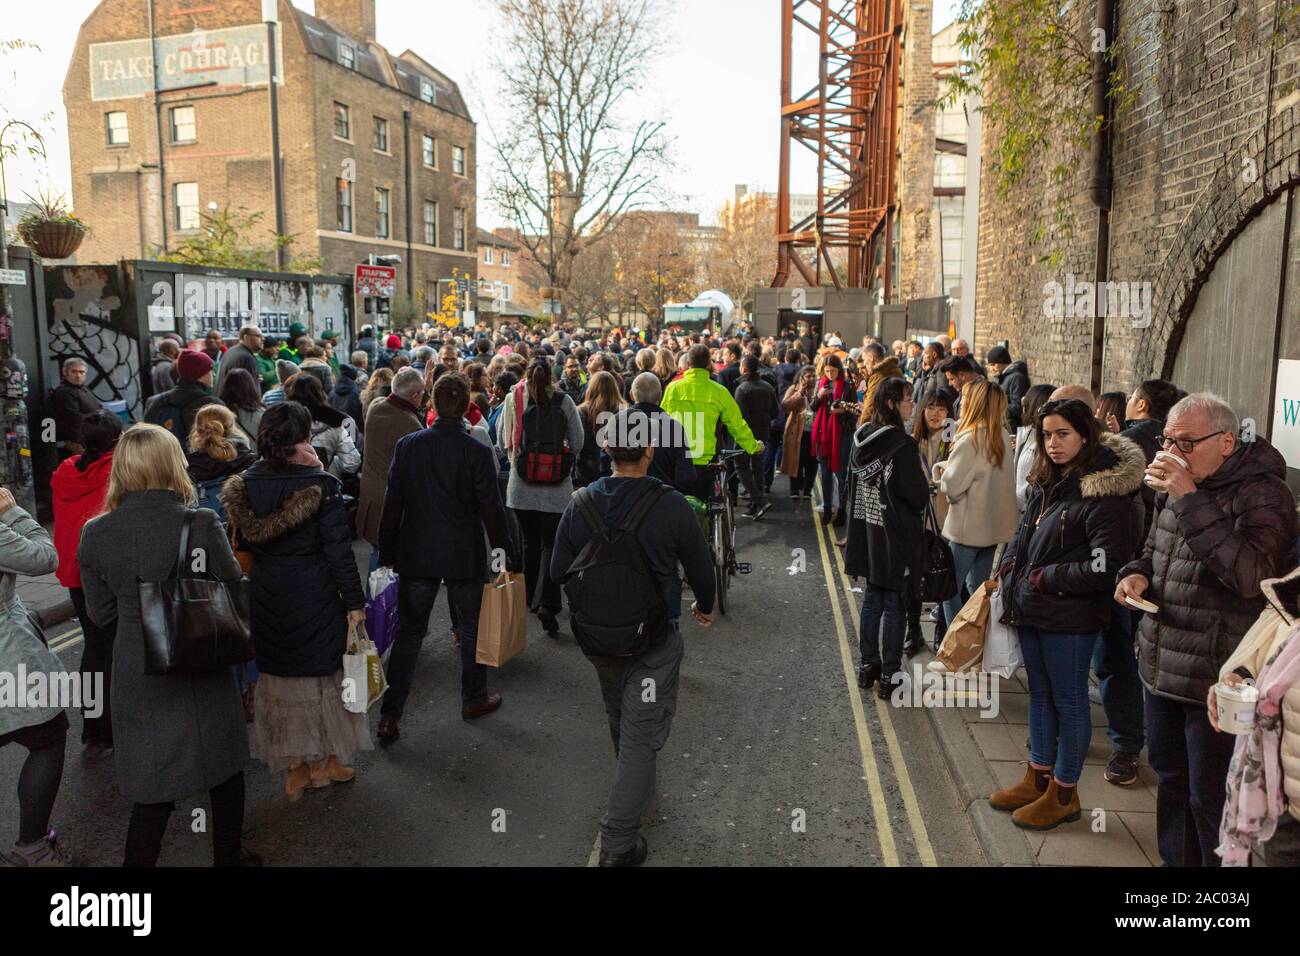 Borough Market, London, UK. 29 Nov, 2019. Menschen aus der Region evakuiert. Szenen um Borough Markt, Southwark, da das Gebiet nach der mutmaßlichen Terroranschlag auf in der Nähe der London Bridge evakuiert. Penelope Barritt/Alamy leben Nachrichten Stockfoto